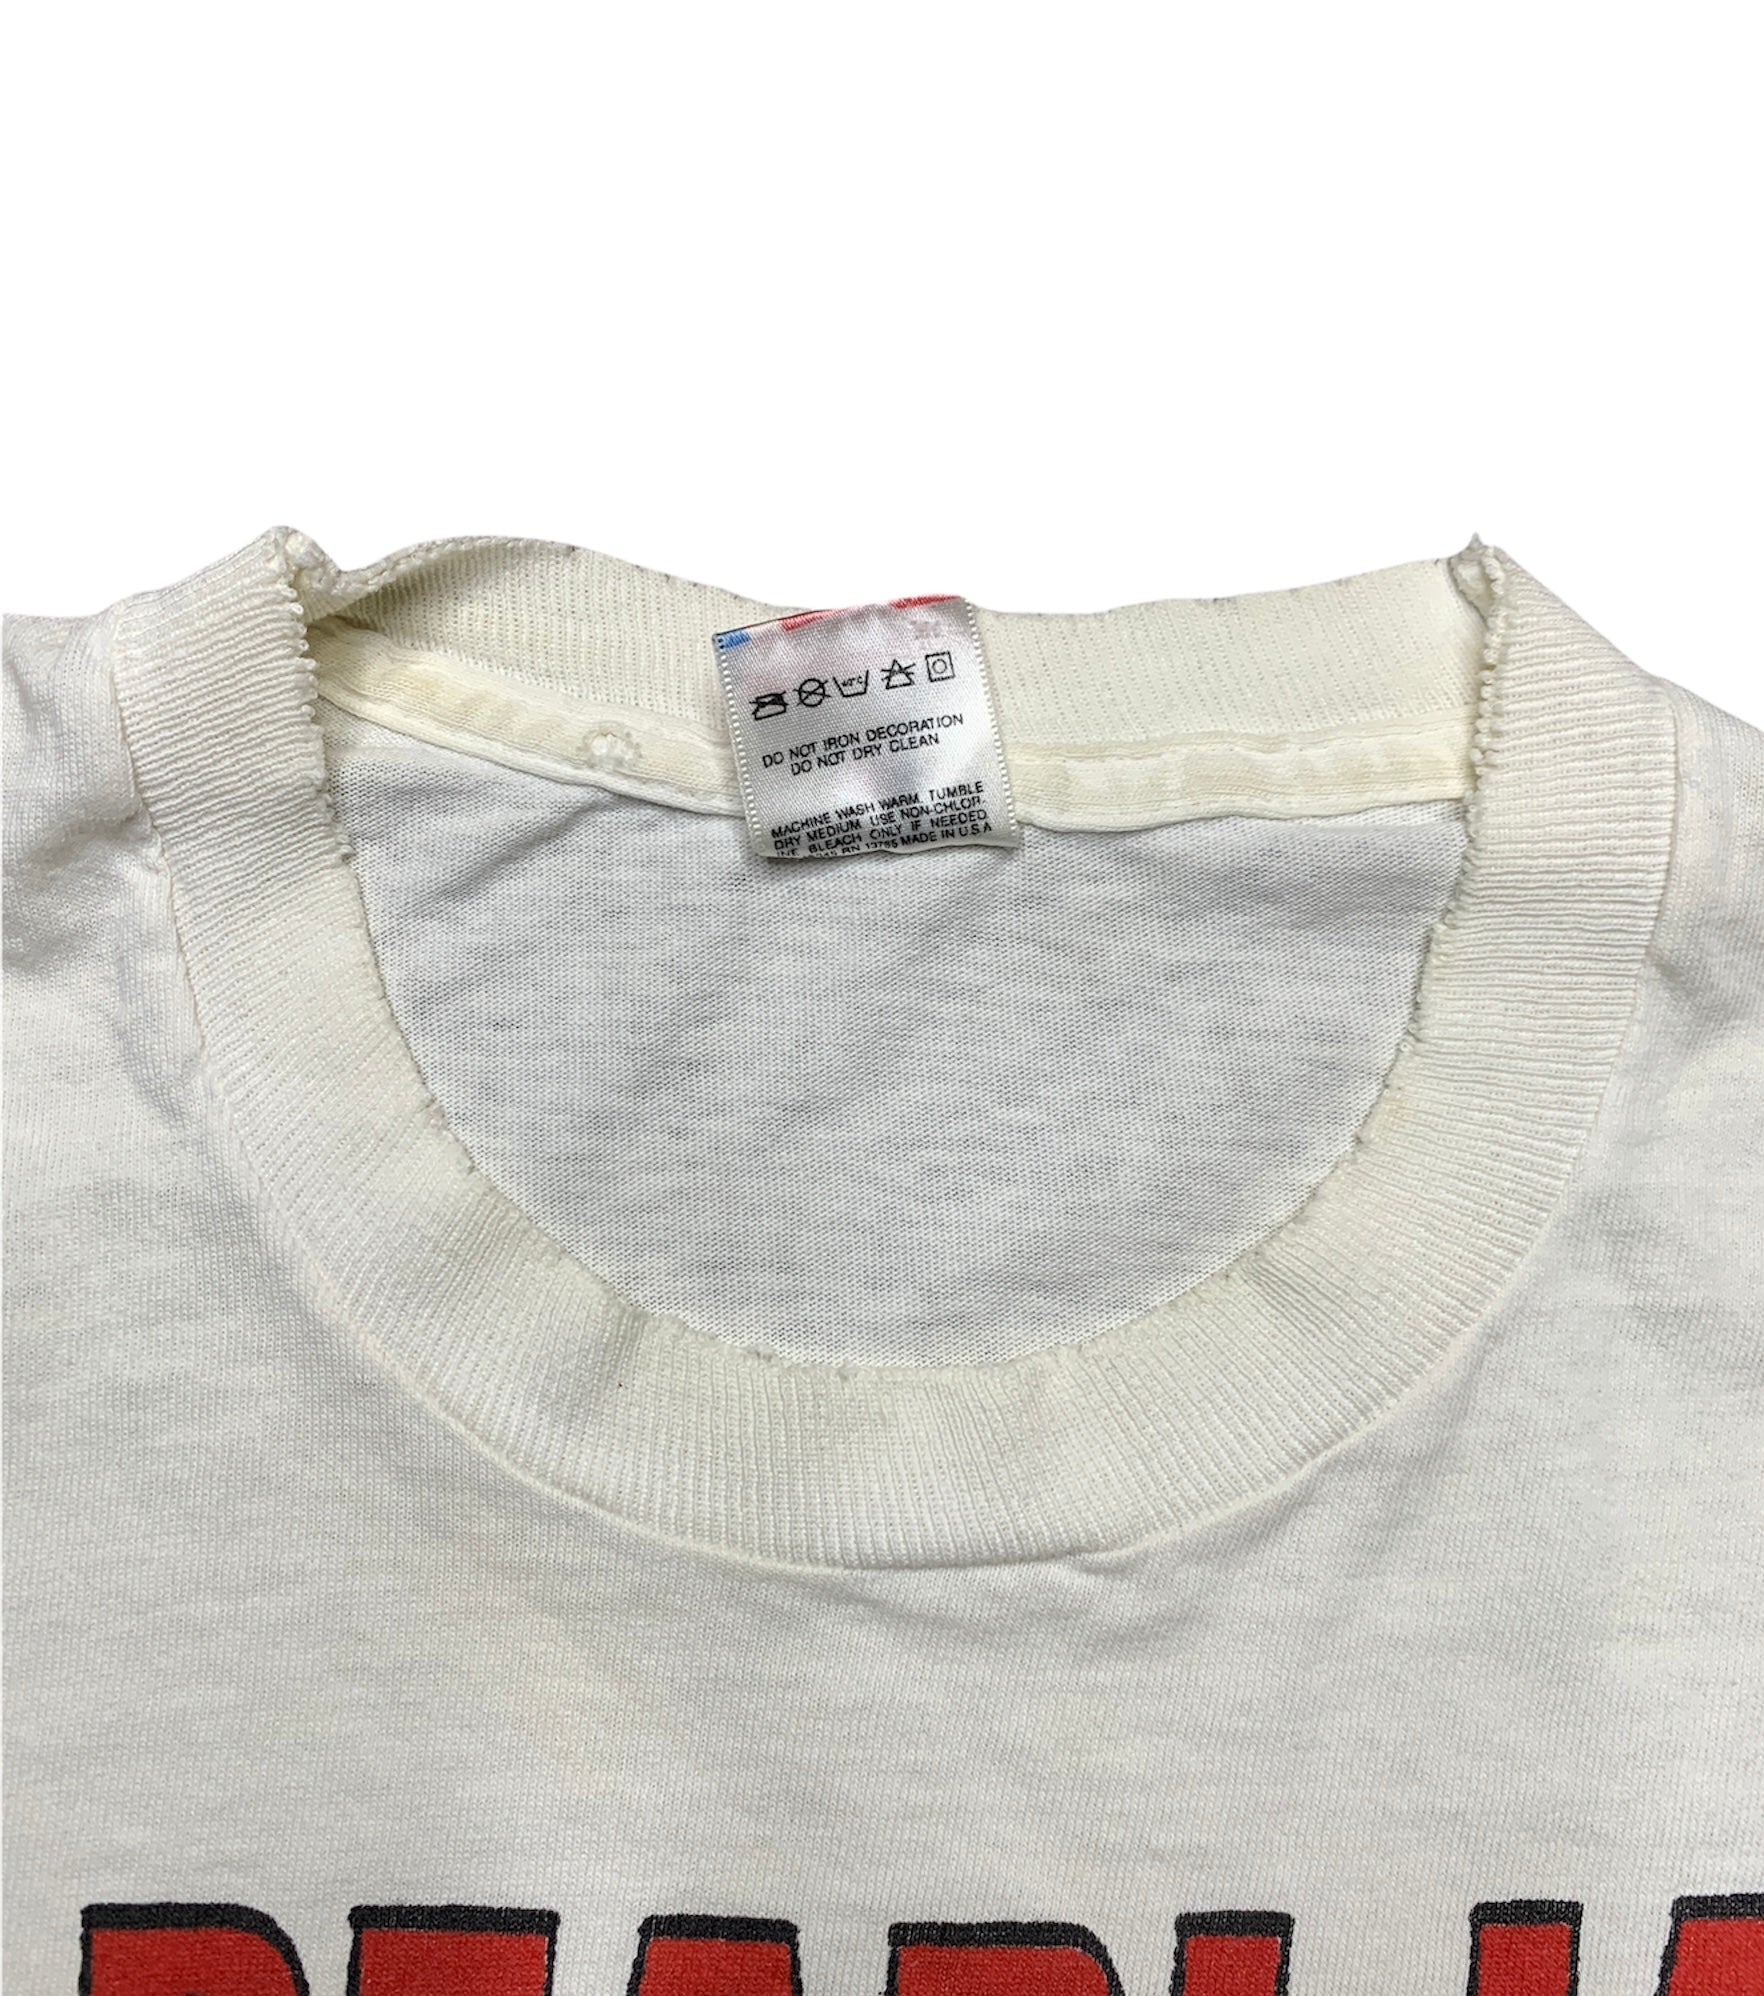 Original Vintage Pearl Jam Mookie Blaylock T-shirt,Sweater, Hoodie